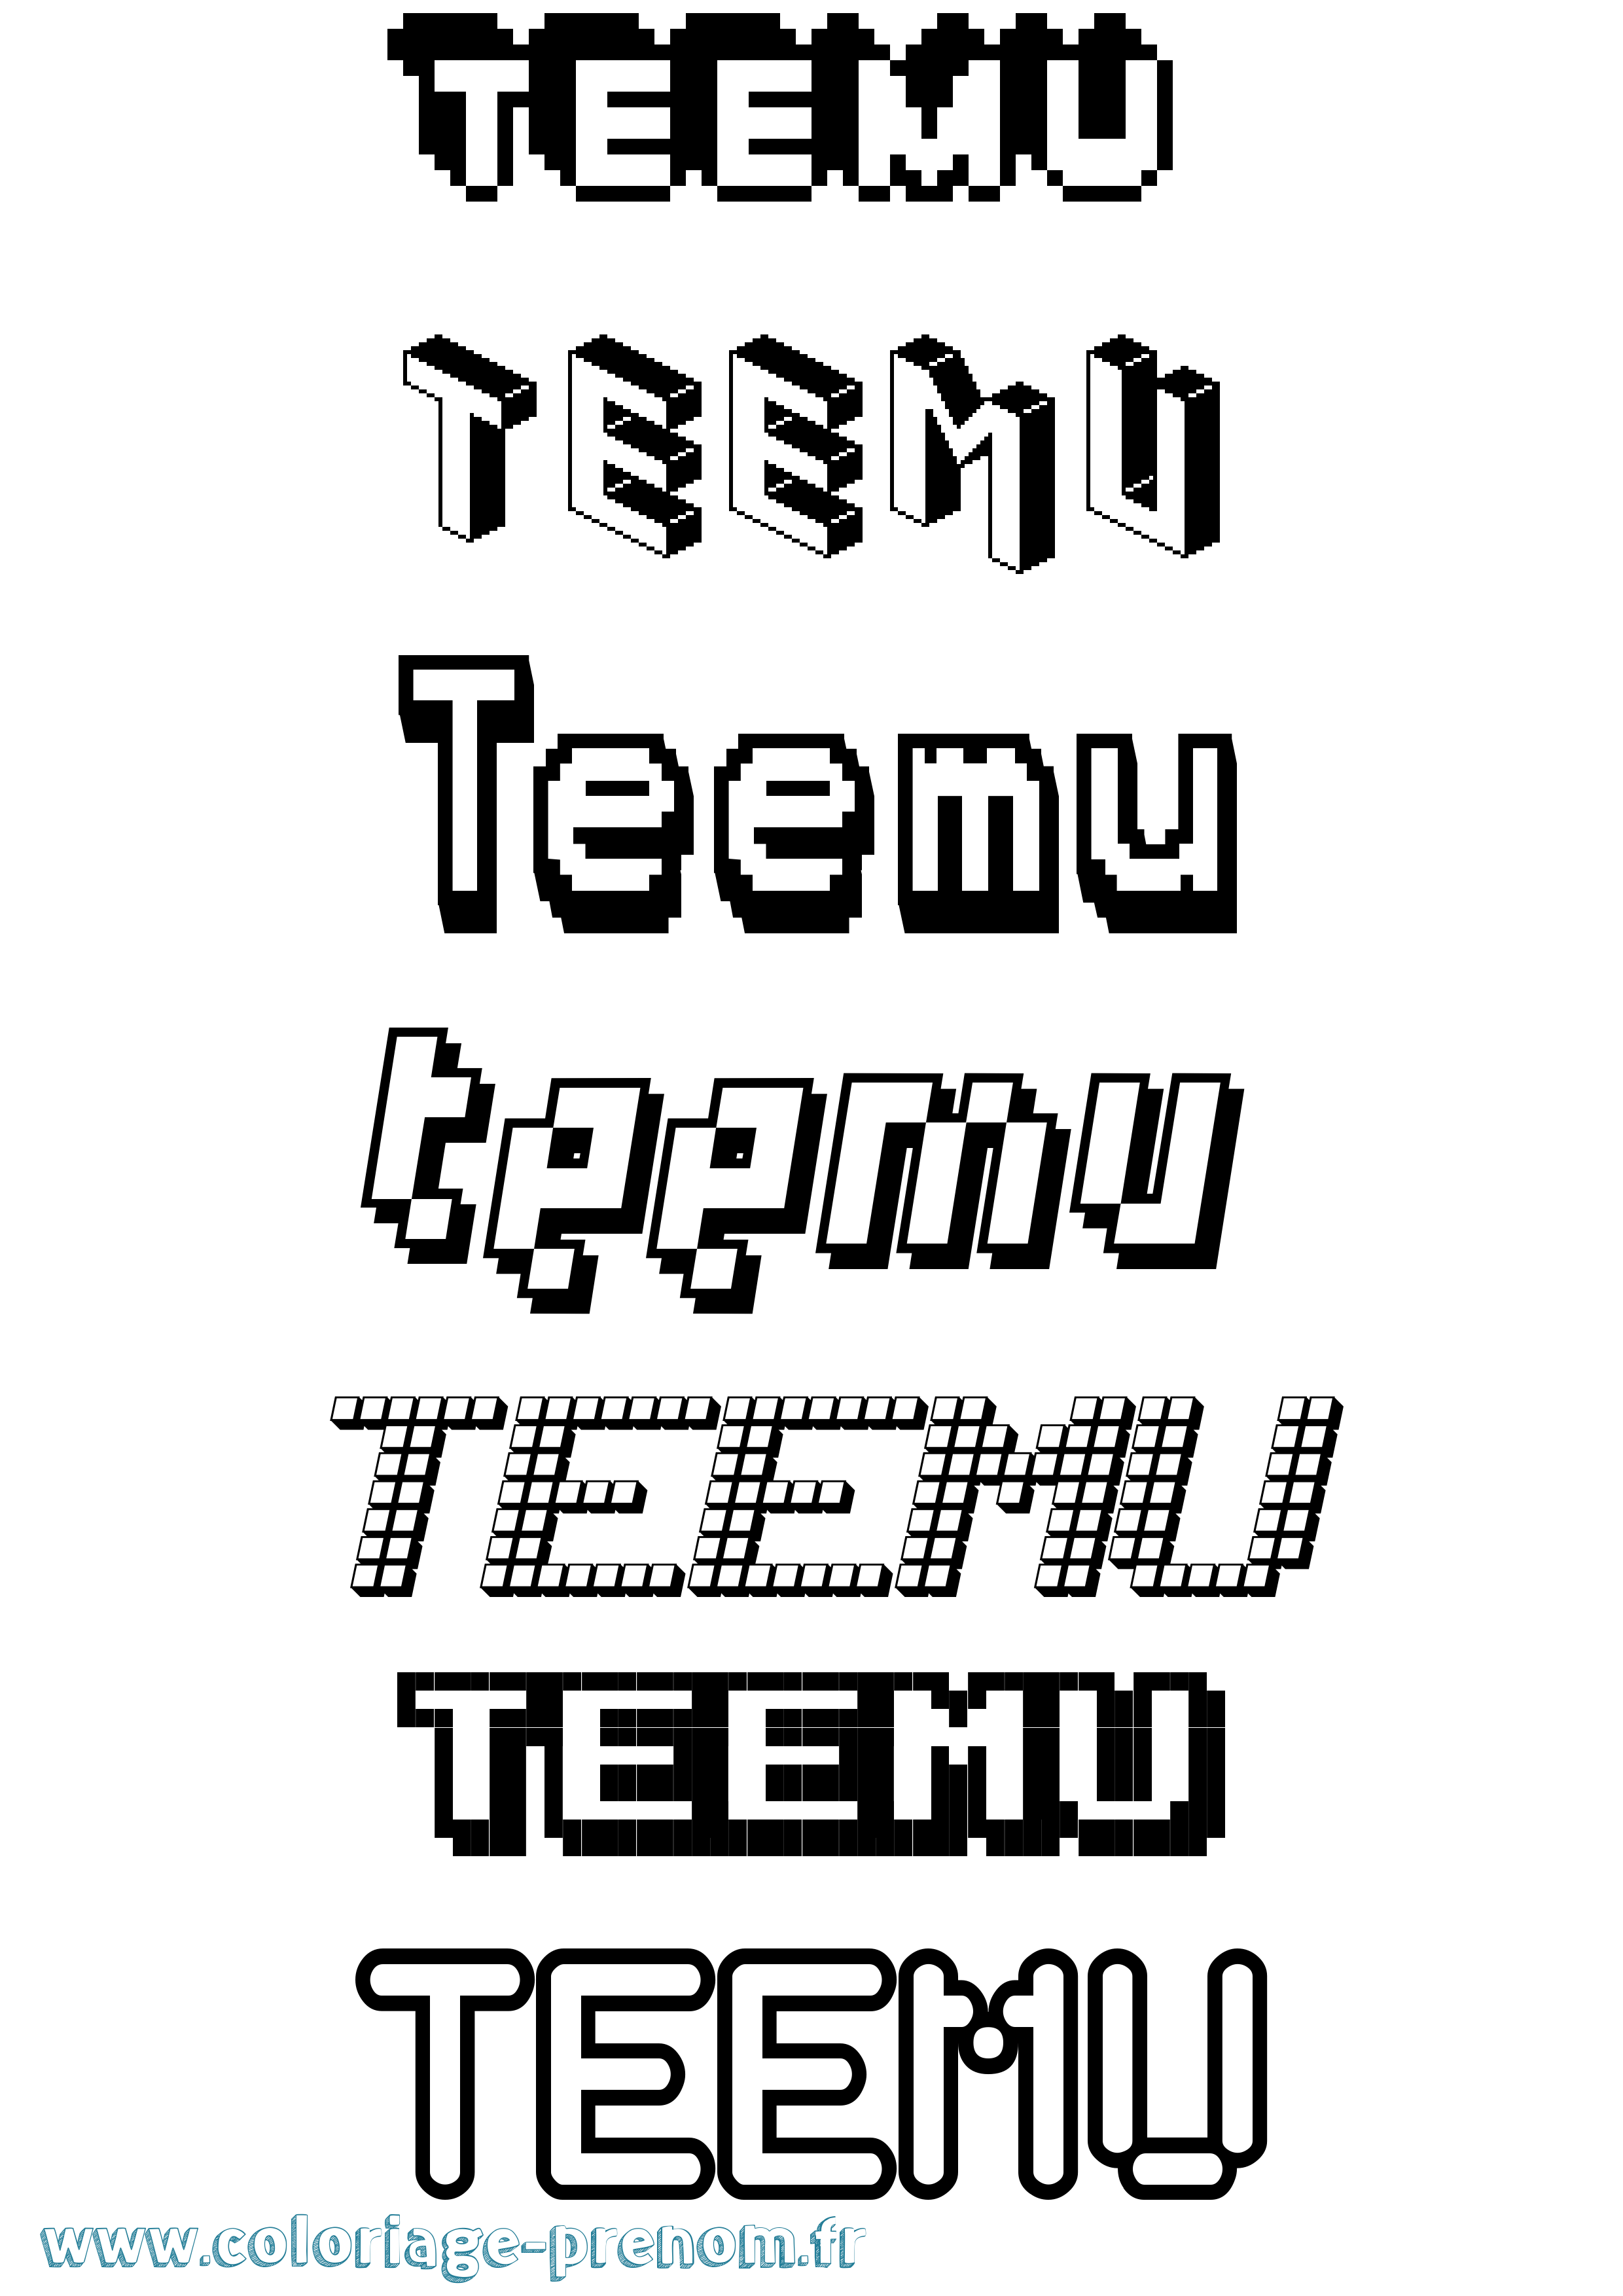 Coloriage prénom Teemu Pixel